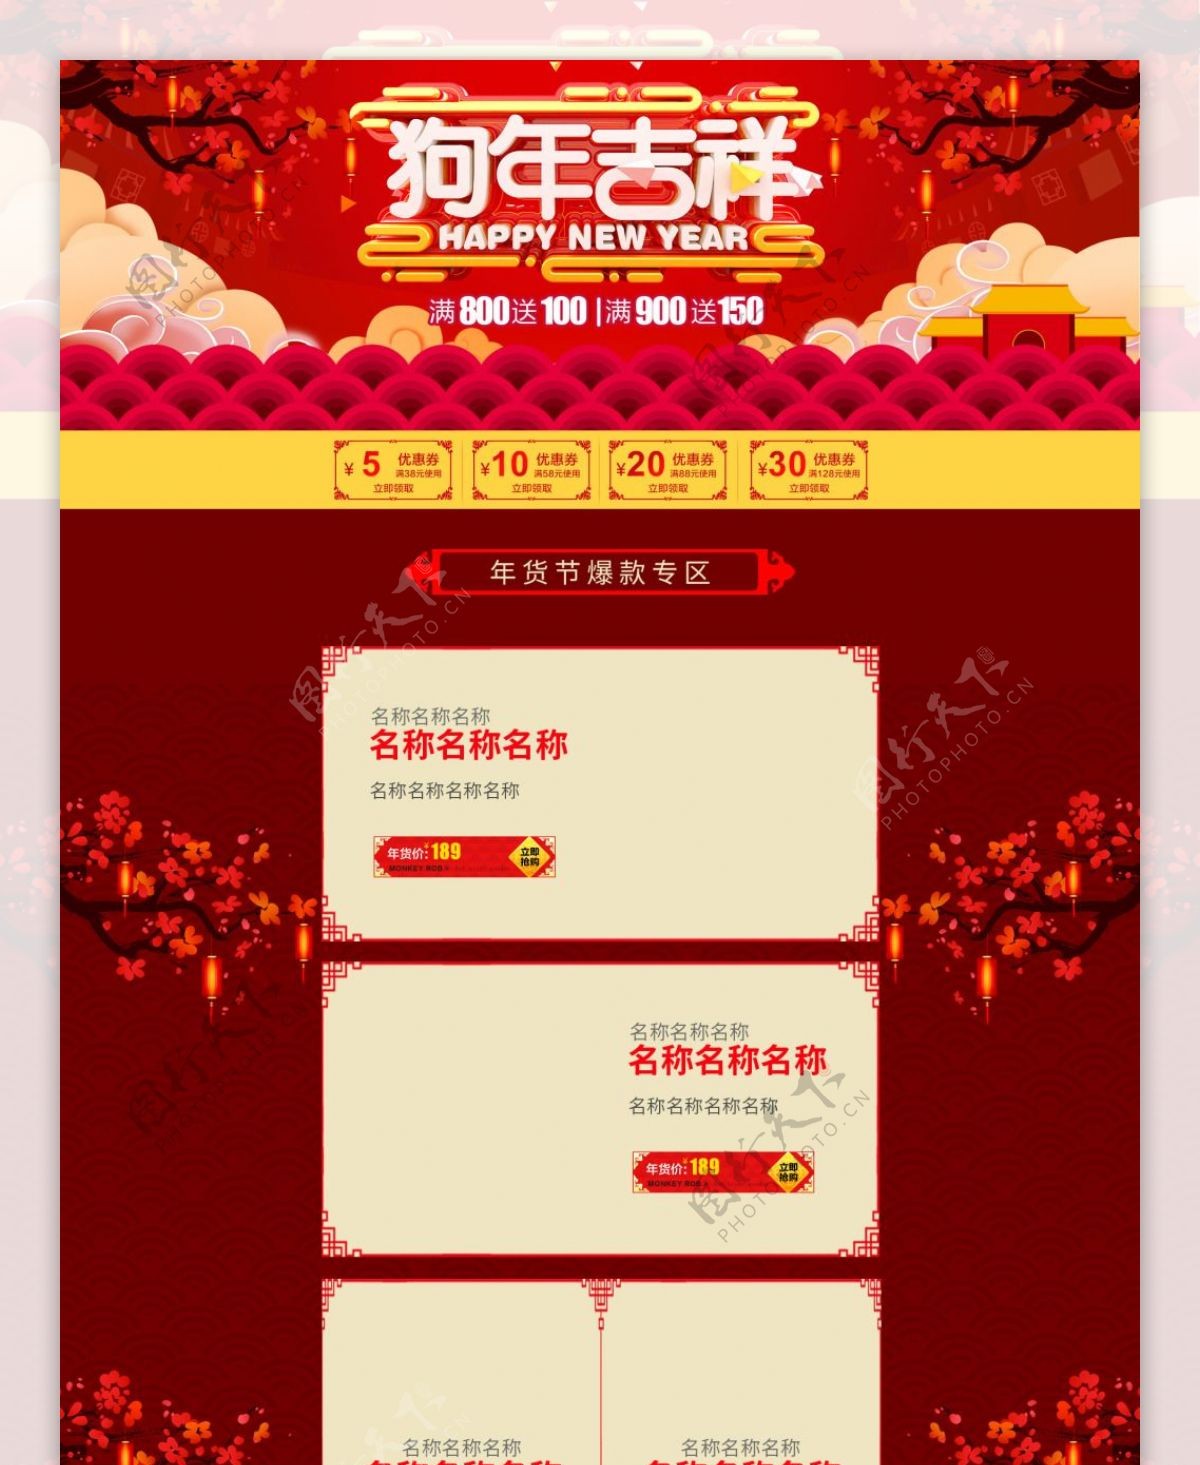 红色中国风天猫年货节首页模板